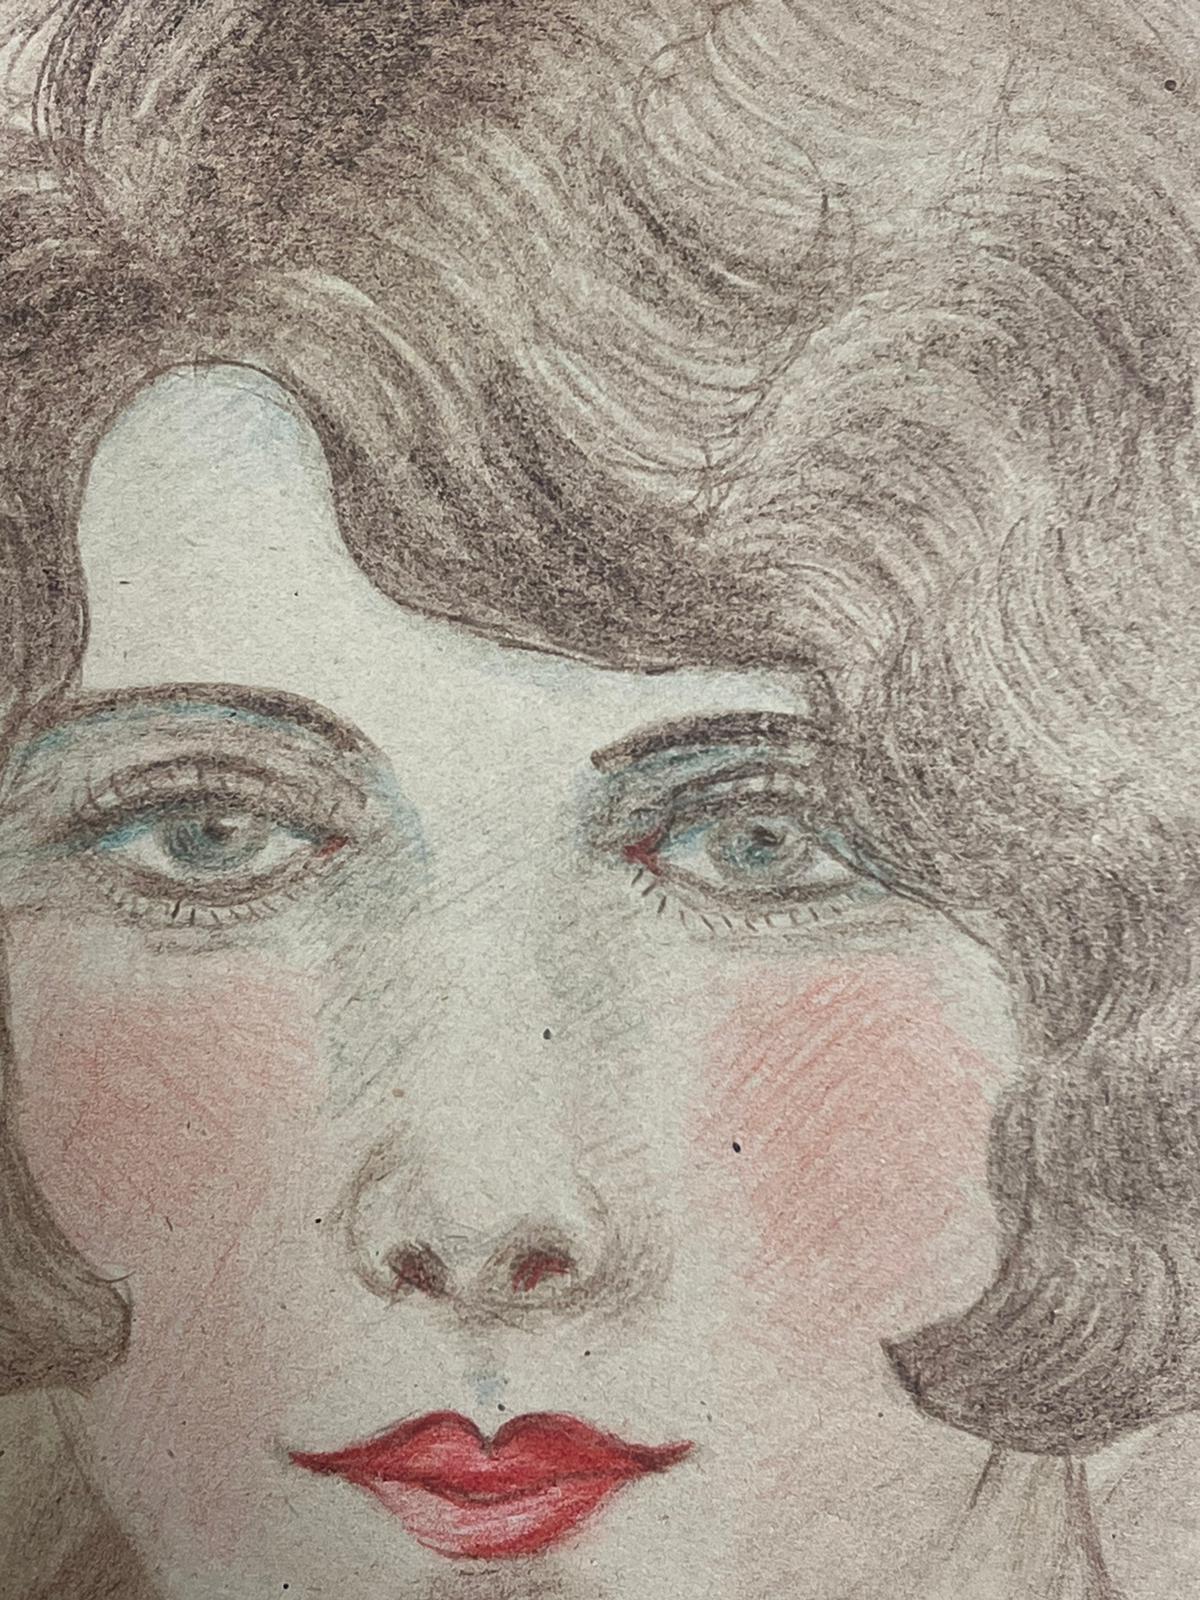 Rotes Lippenblaues Porträt einer eleganten jungen Gesellschafts Dame mit blauen Augen, exquisite Zeichnung  (Amerikanischer Impressionismus), Painting, von Marjorie Schiele (1913-2008)